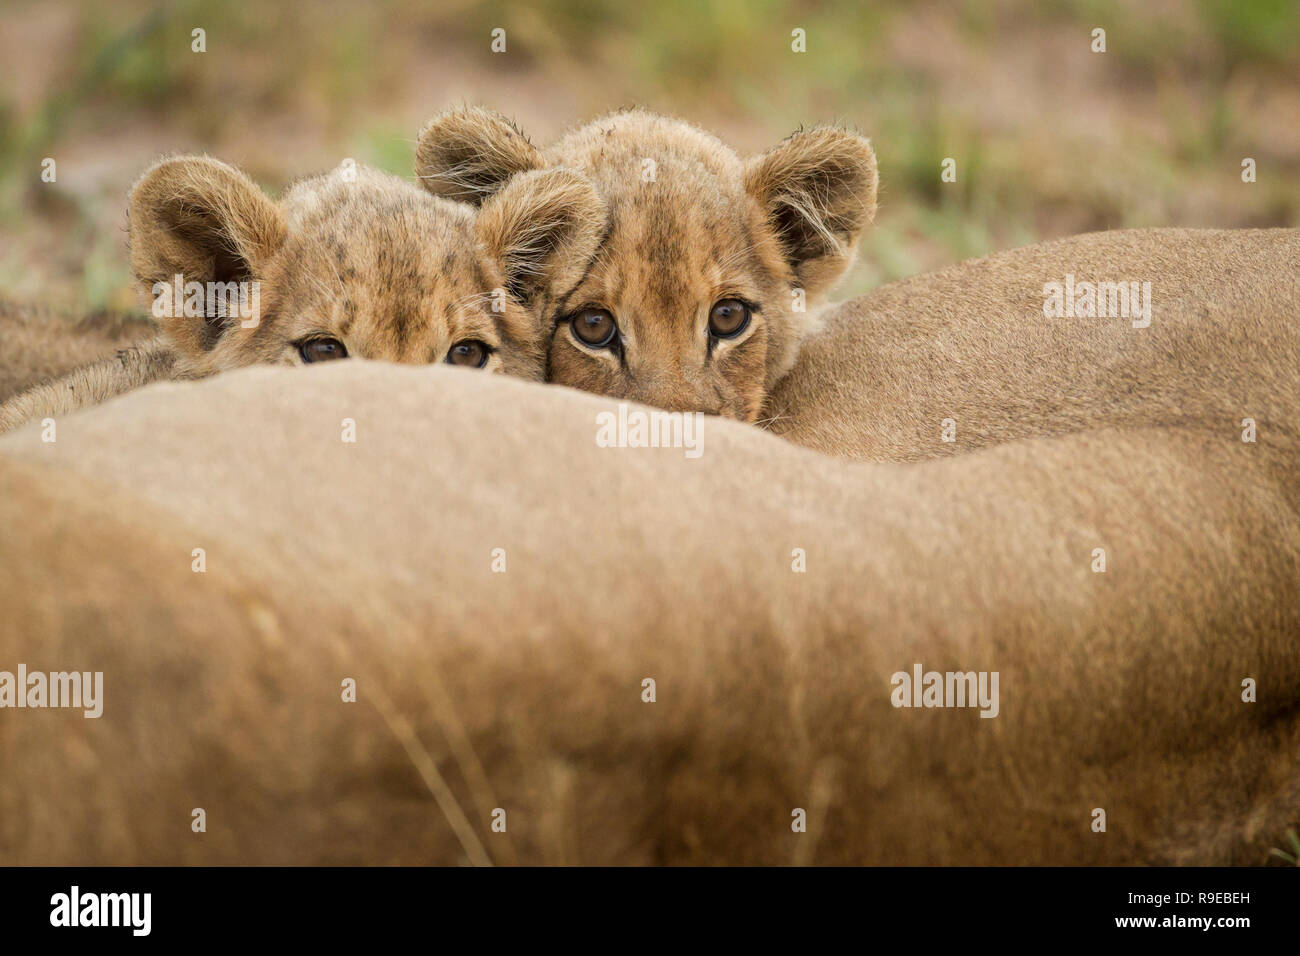 deux adorables petits lions boivent du lait pendant que leur mère la lionne est couchée Banque D'Images